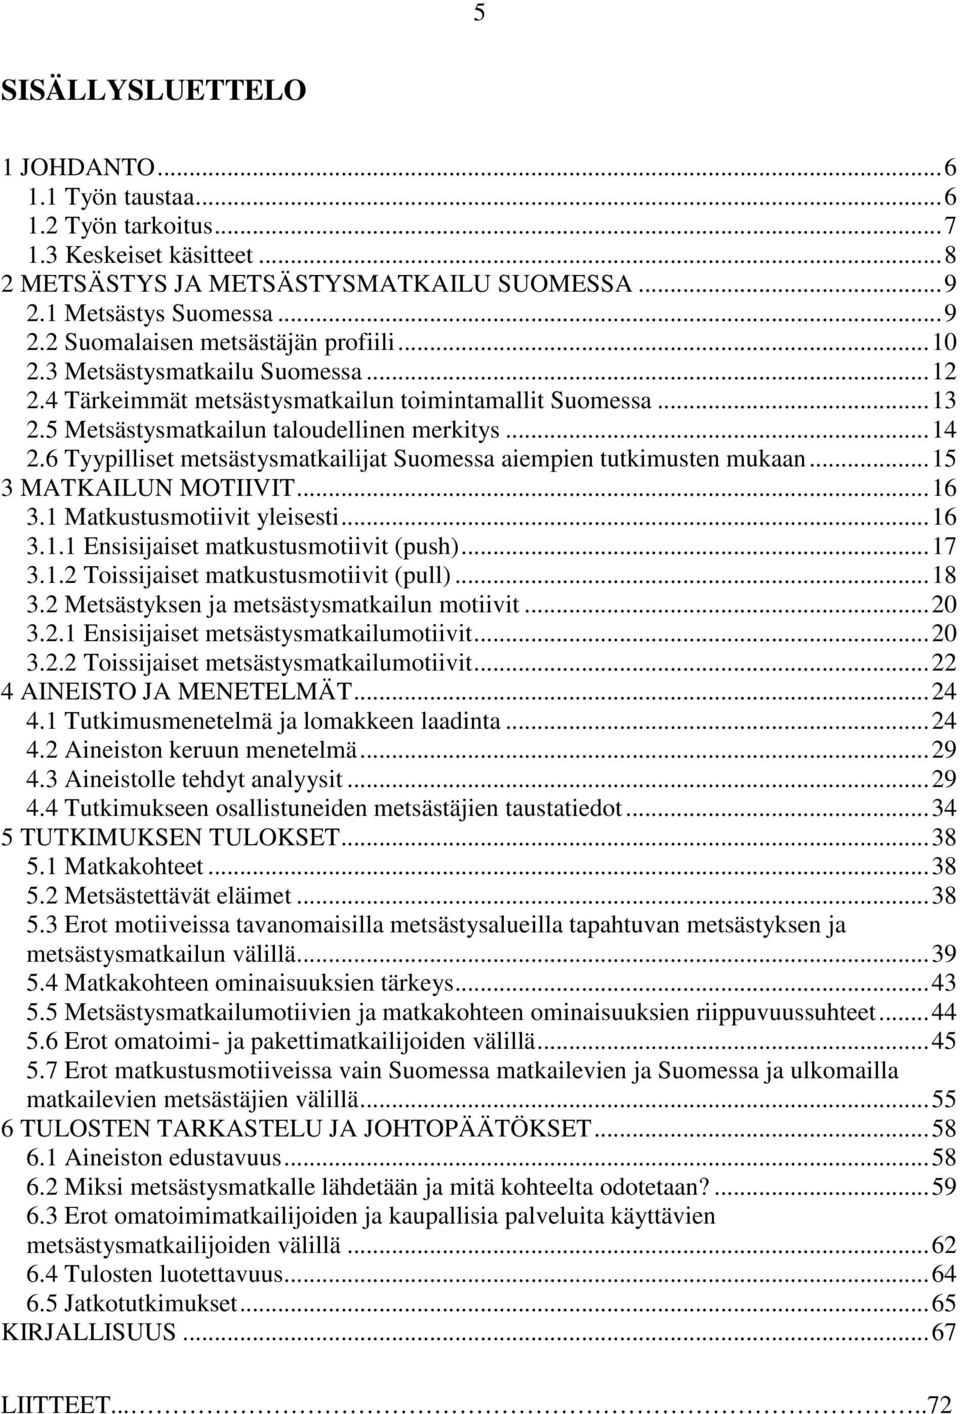 6 Tyypilliset metsästysmatkailijat Suomessa aiempien tutkimusten mukaan...15 3 MATKAILUN MOTIIVIT...16 3.1 Matkustusmotiivit yleisesti...16 3.1.1 Ensisijaiset matkustusmotiivit (push)...17 3.1.2 Toissijaiset matkustusmotiivit (pull).